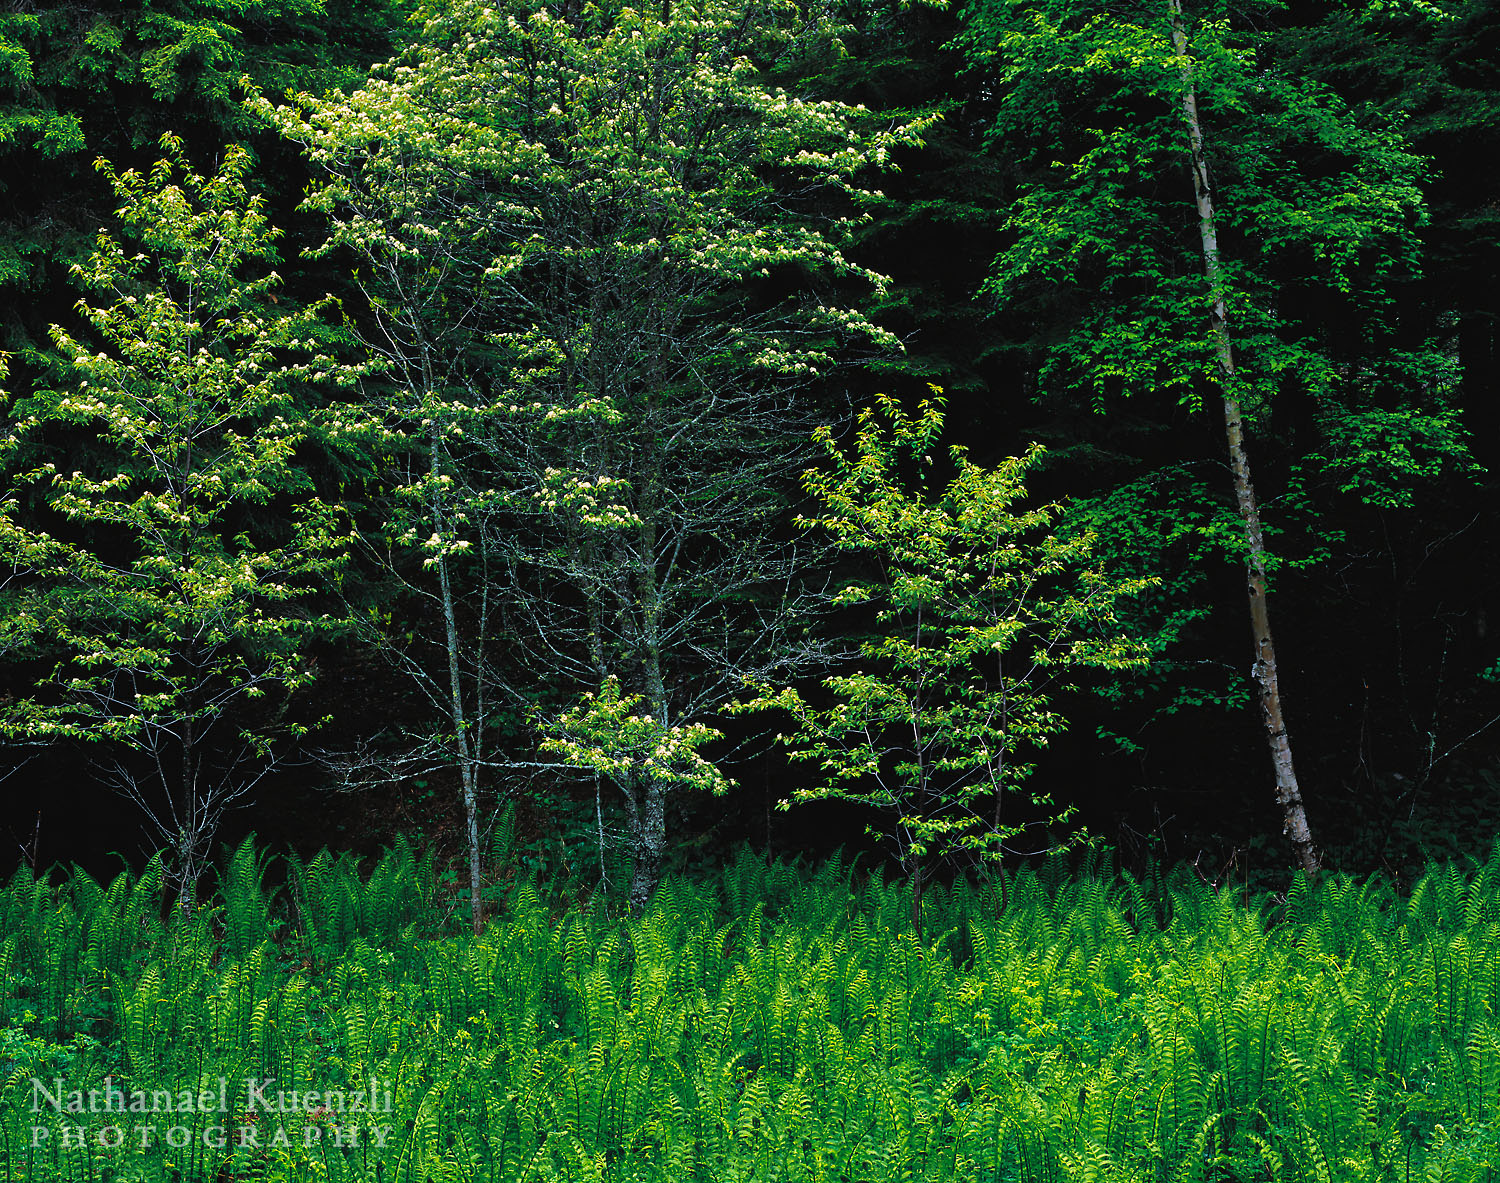    Fiddlehead Ferns, Cascade River State Park, Minnesota, June 2005   